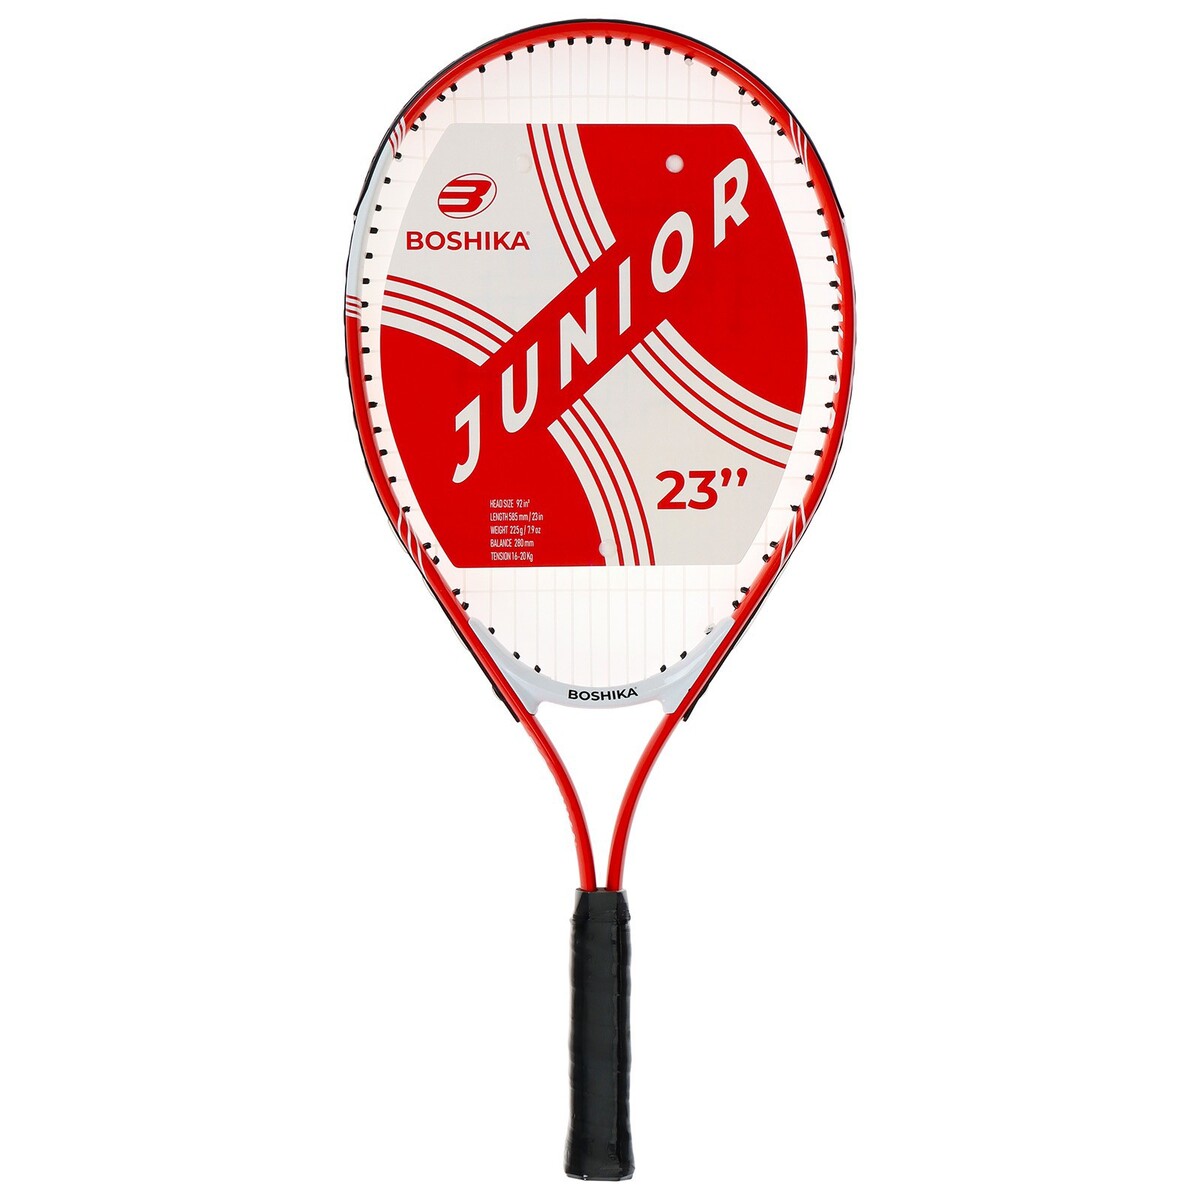 Ракетка для большого тенниса детская boshika junior, алюминий, 23'', цвет красный ракетка donic champs 150 270216